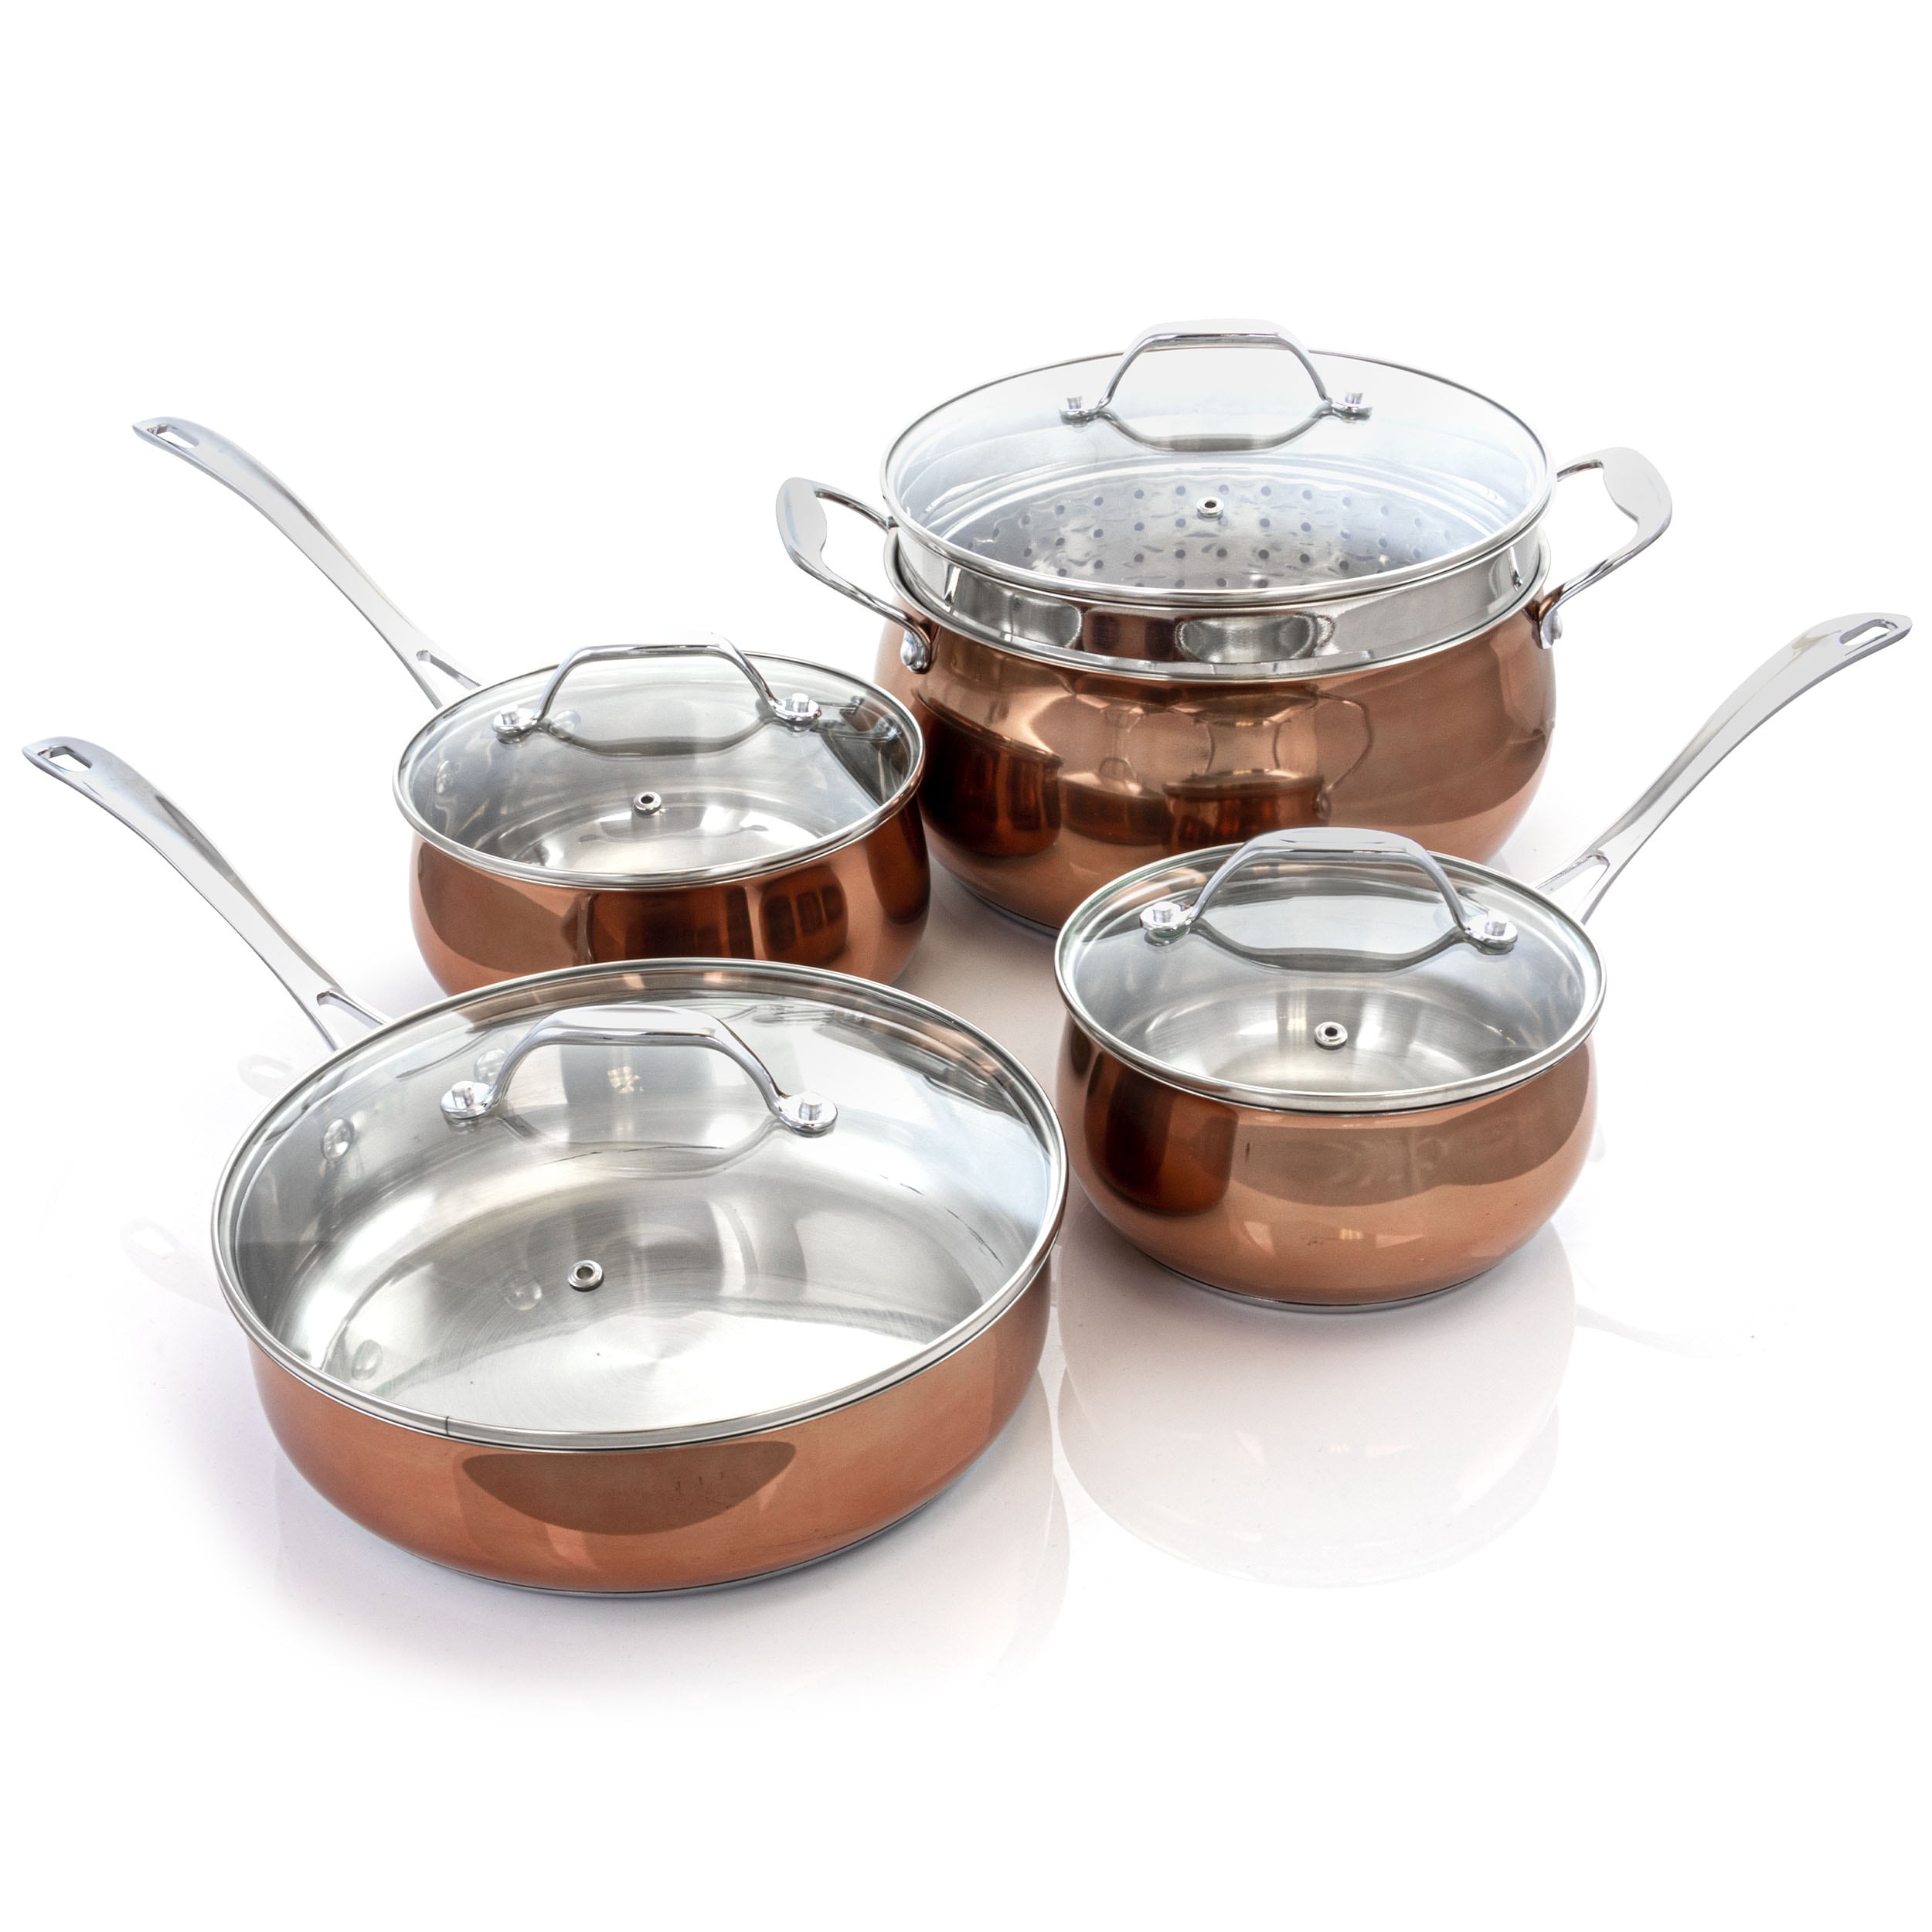 Paula Deen 11-piece Stainless Steel & Copper Cookware Set 